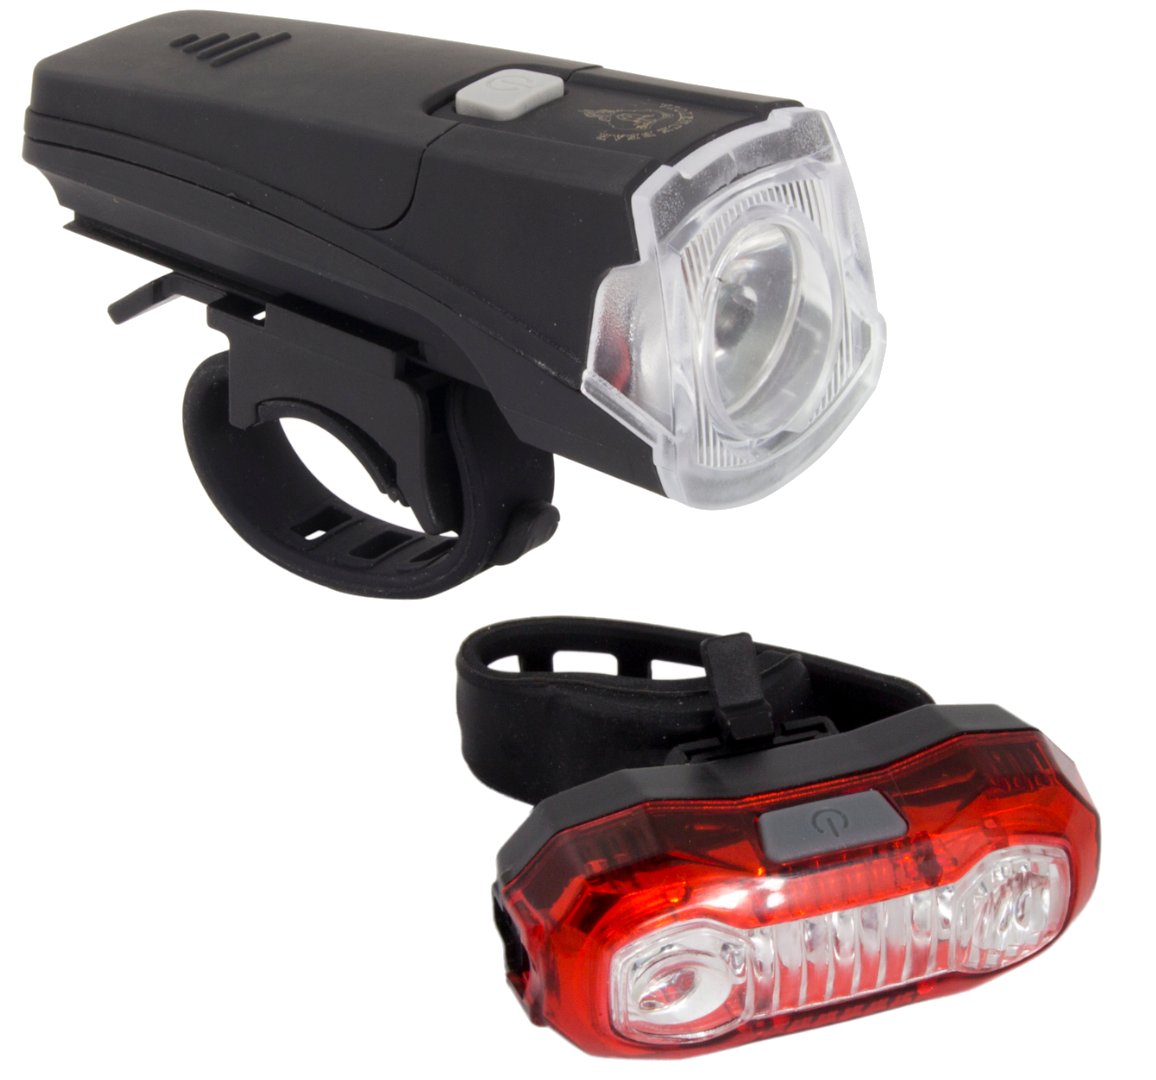 Zestaw lampka rowerowa LED na przód i tył Esperanza WEZEN  + POLARIS USB